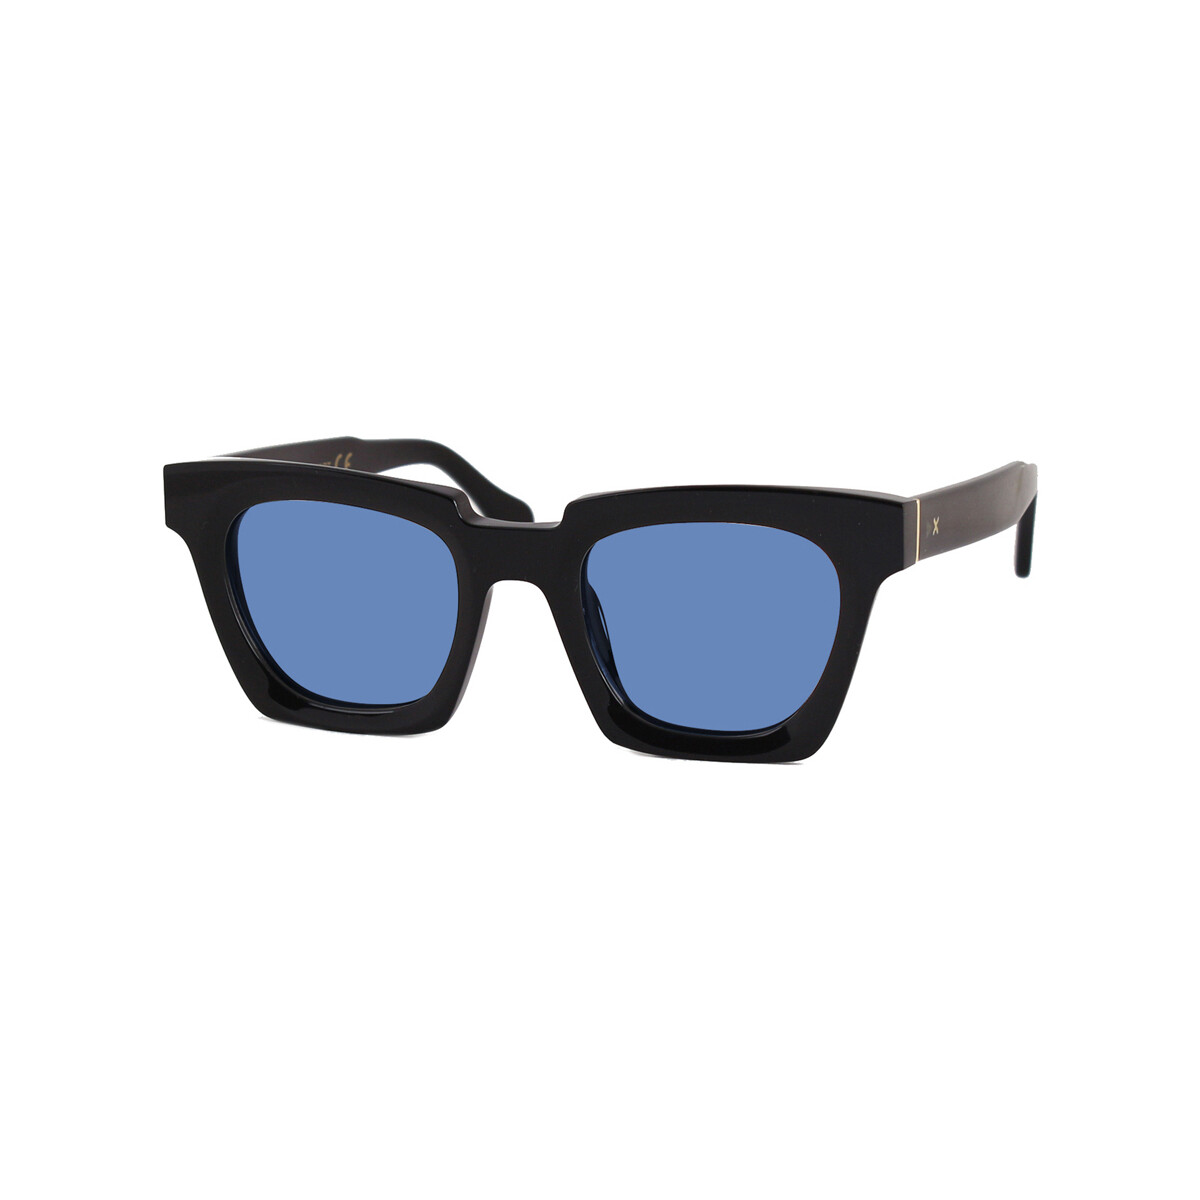 Orologi & Gioielli Occhiali da sole Xlab STEWART Occhiali da sole, Nero/Azzurro, 49 mm Nero